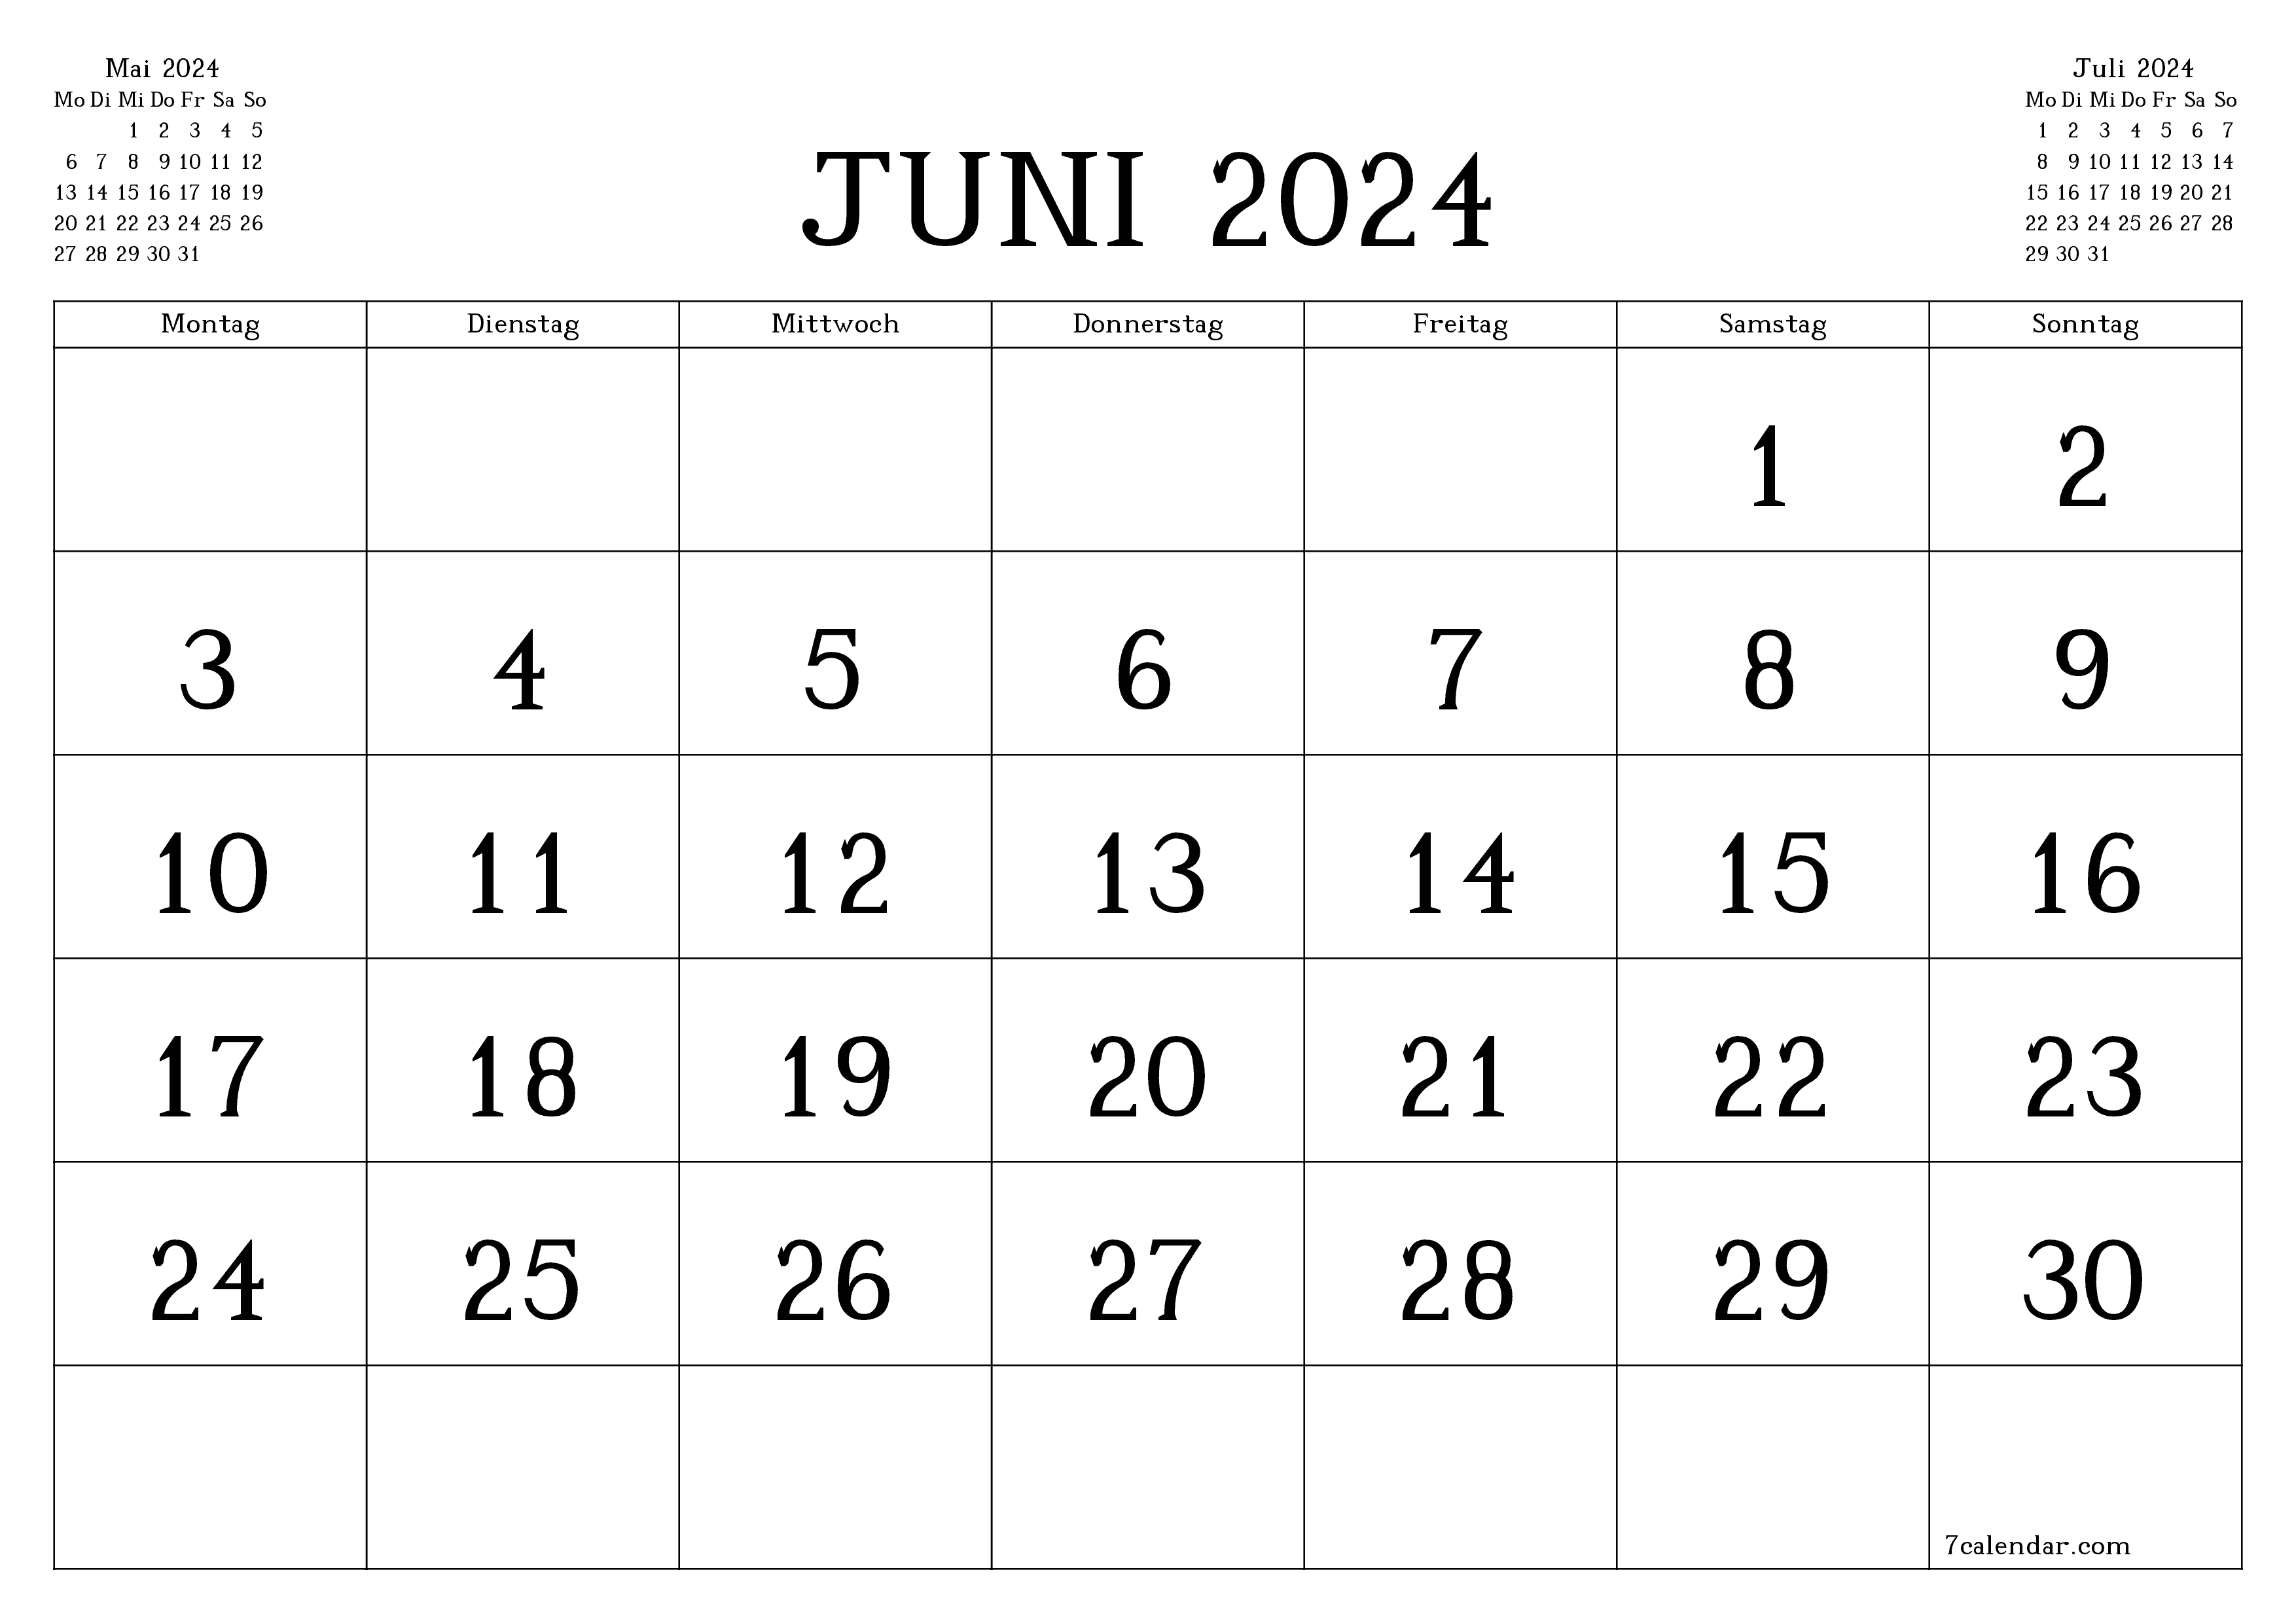 Monatsplaner für Monat Juni 2024 mit Notizen leeren, speichern und als PDF PNG German - 7calendar.com drucken